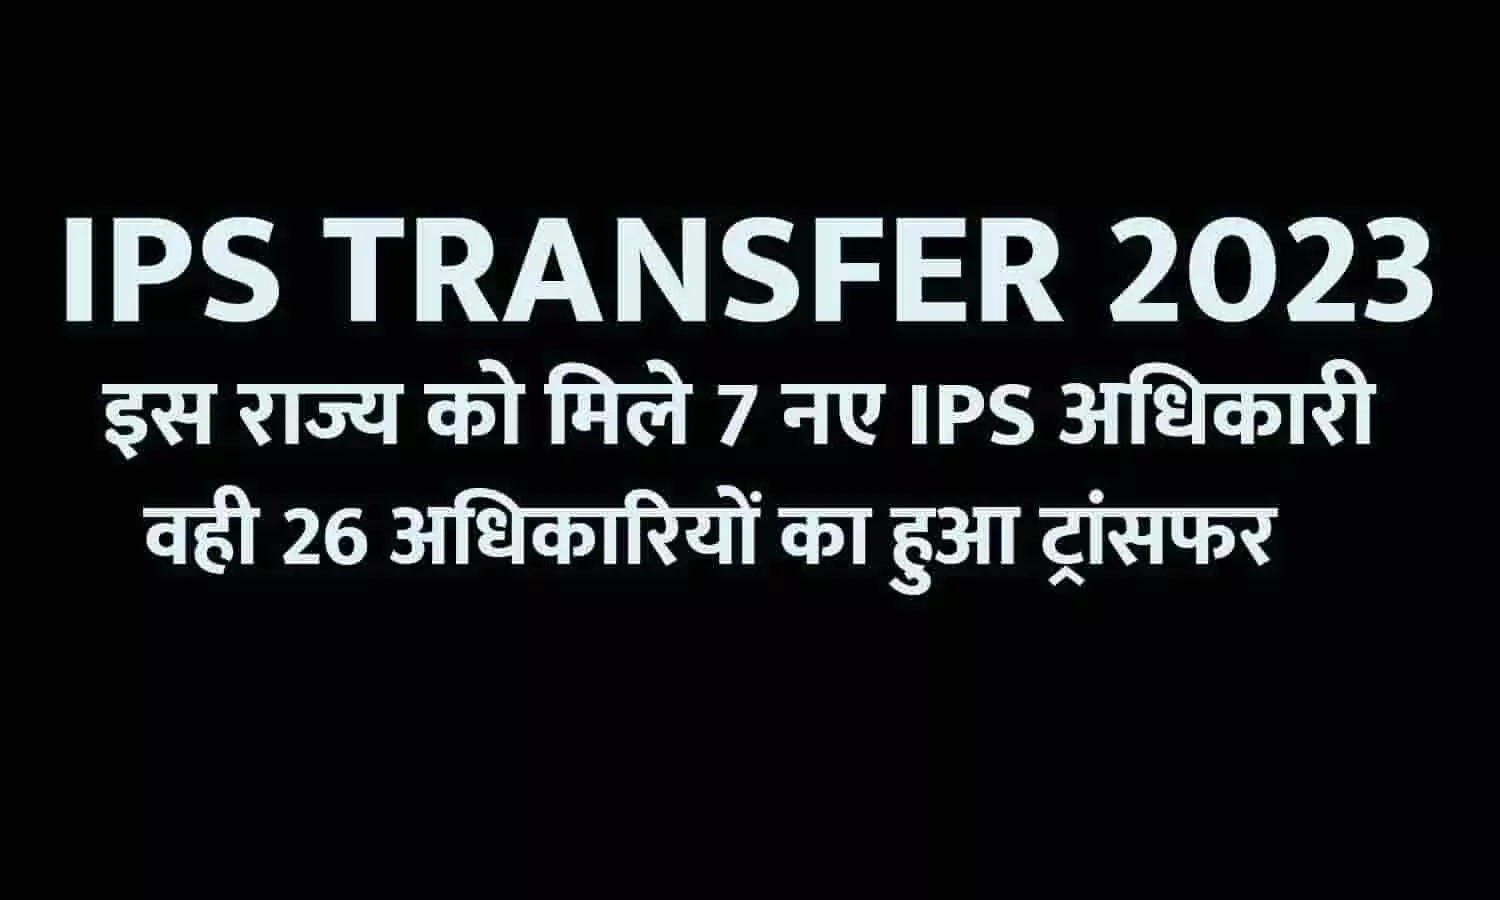 Bihar IPS Transfer 2023